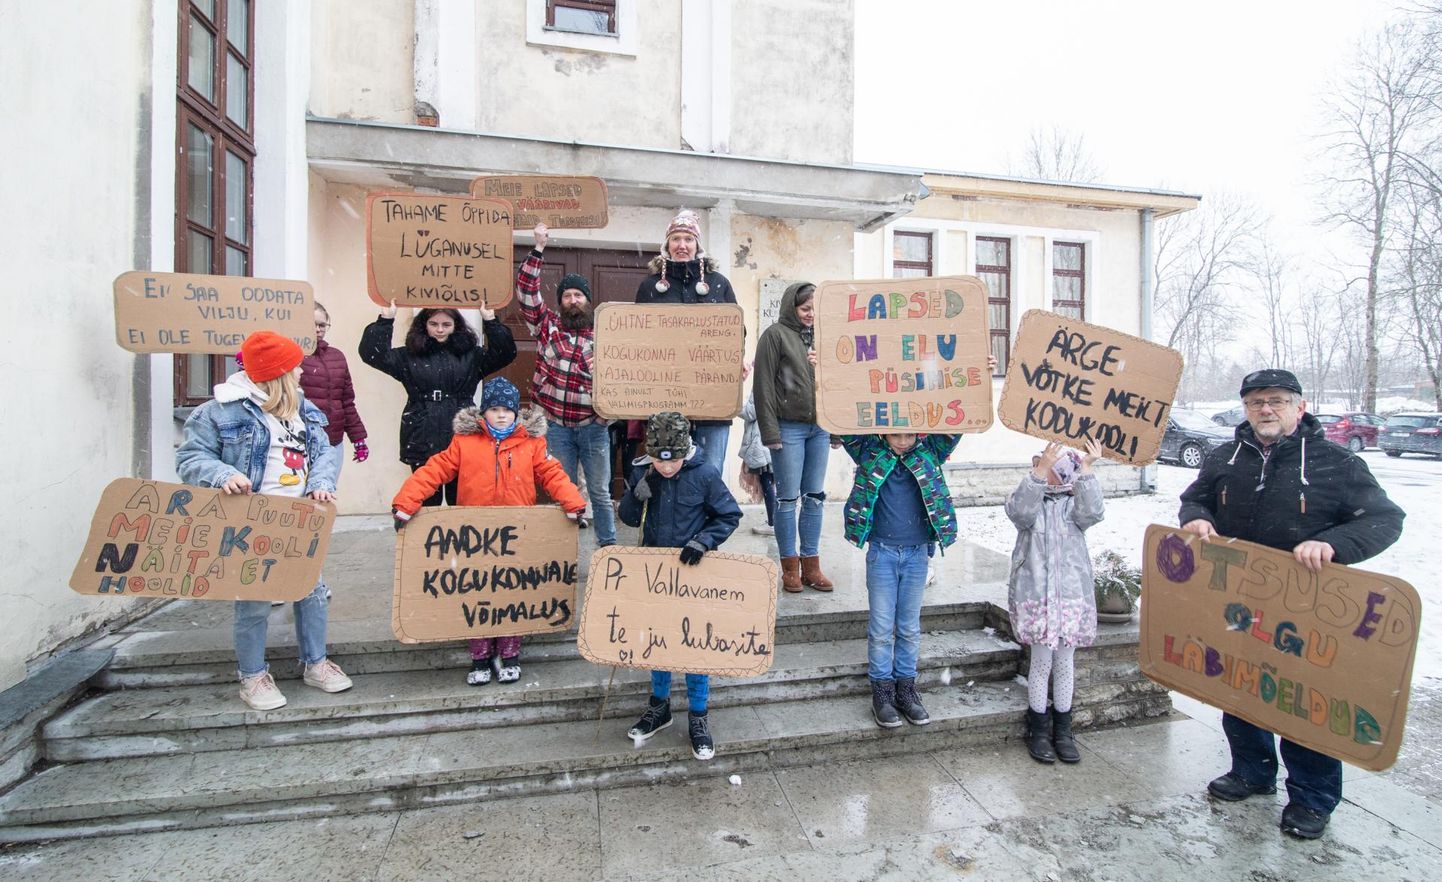 Пикет учителей в поддержку школы Люганузе состоялся 30 марта.